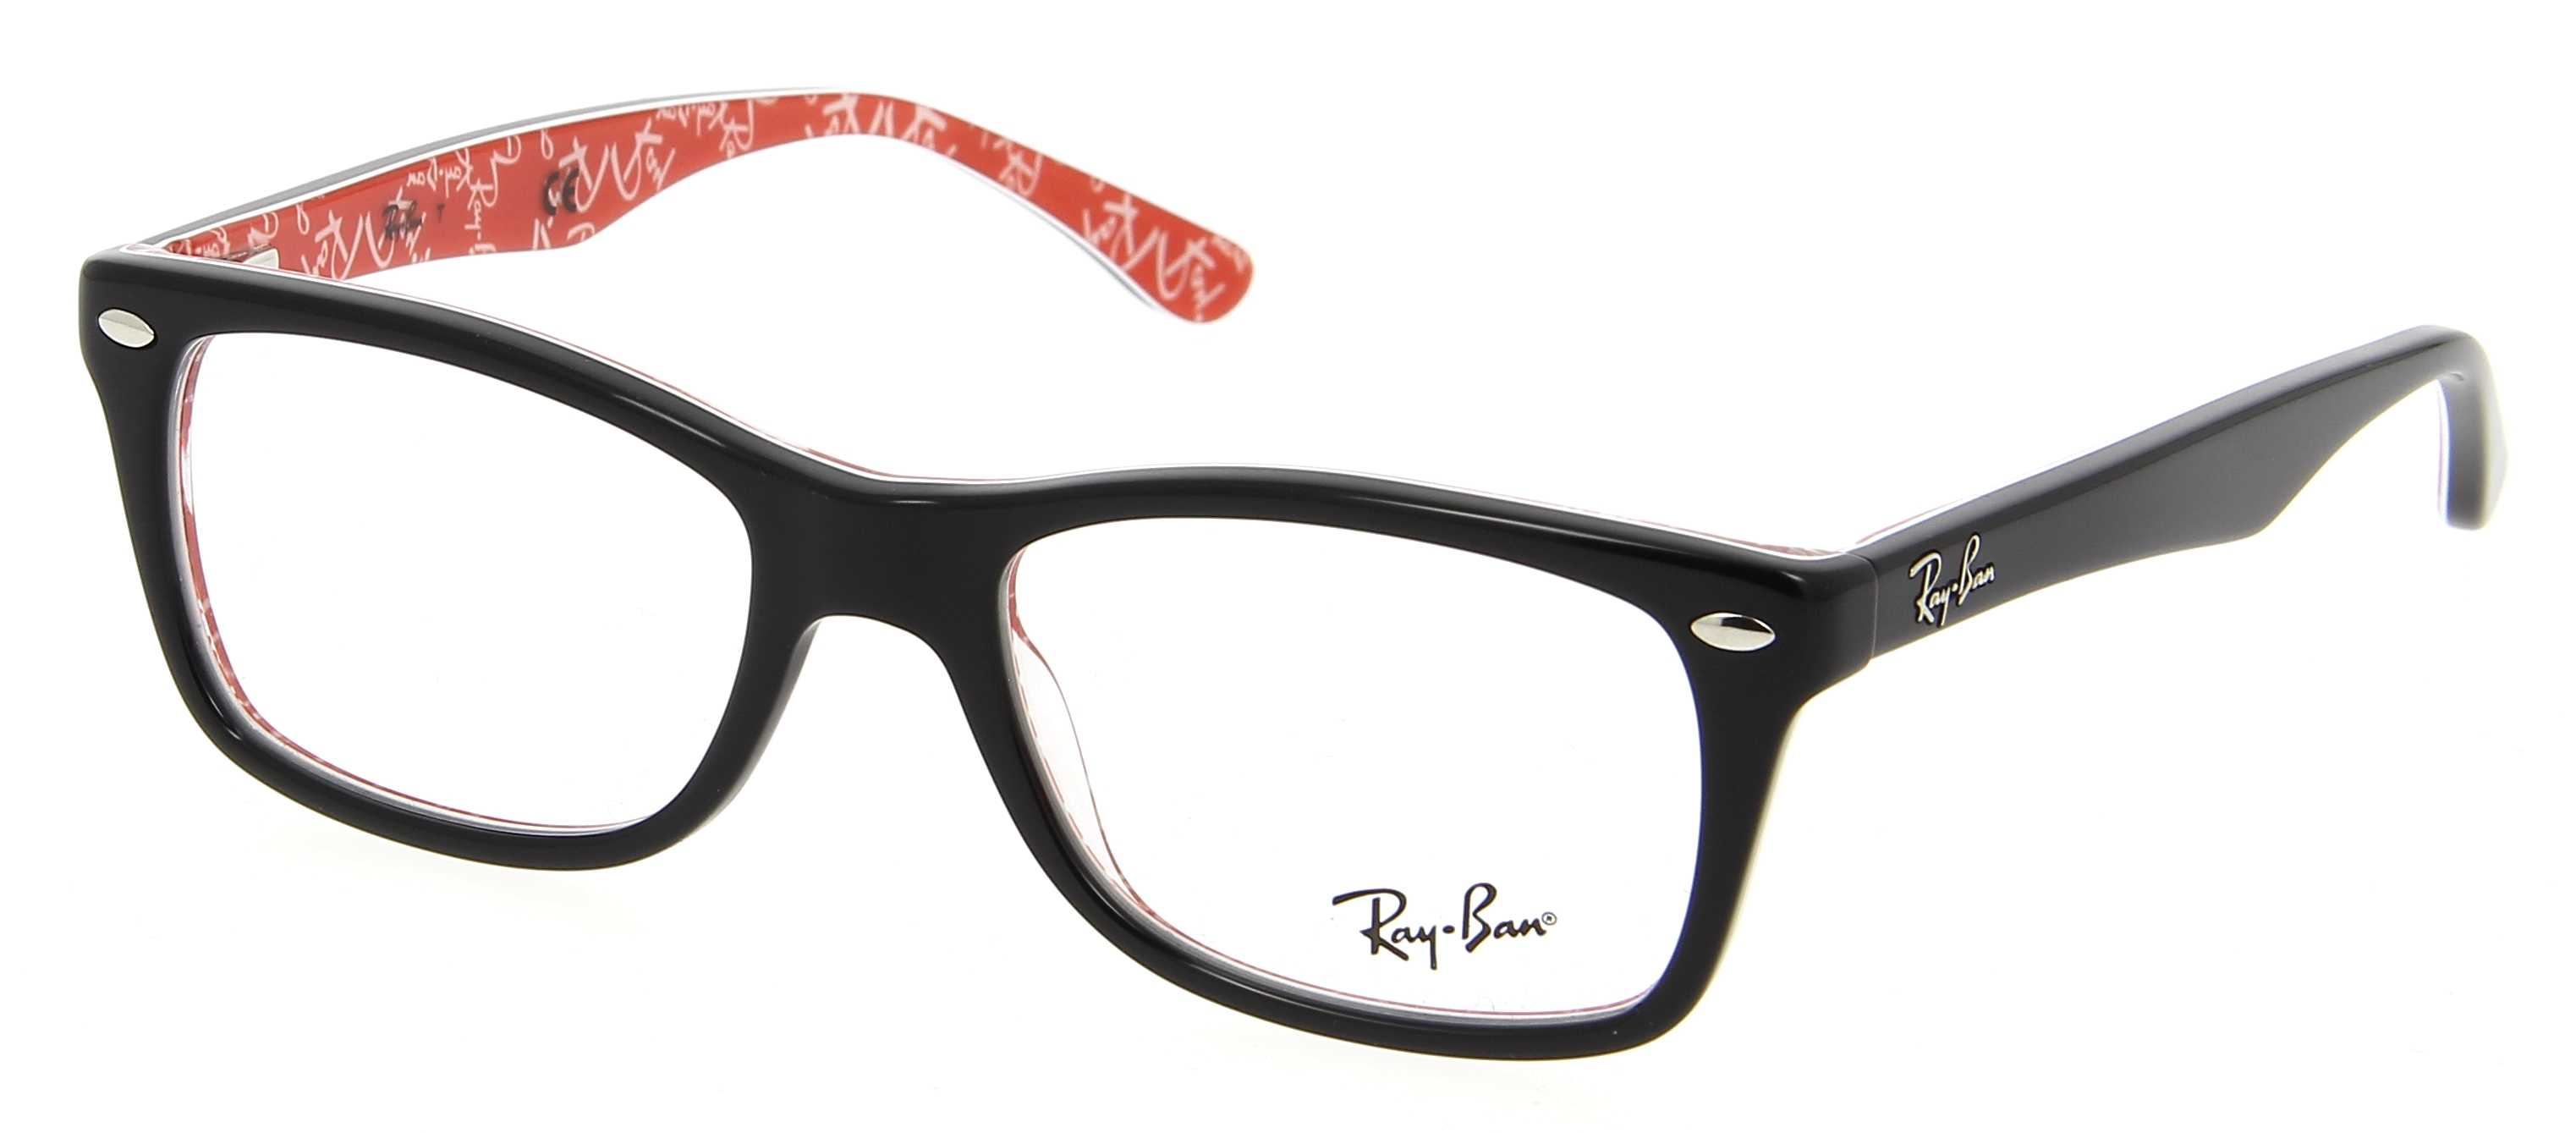 Besnoeiing Afleiden inch Eyeglasses RAY-BAN RX 5228 2479 50/17 Woman Noir / Rouge rectangle frames  Full Frame Glasses trendy 50mmx17mm 111&#36;CA